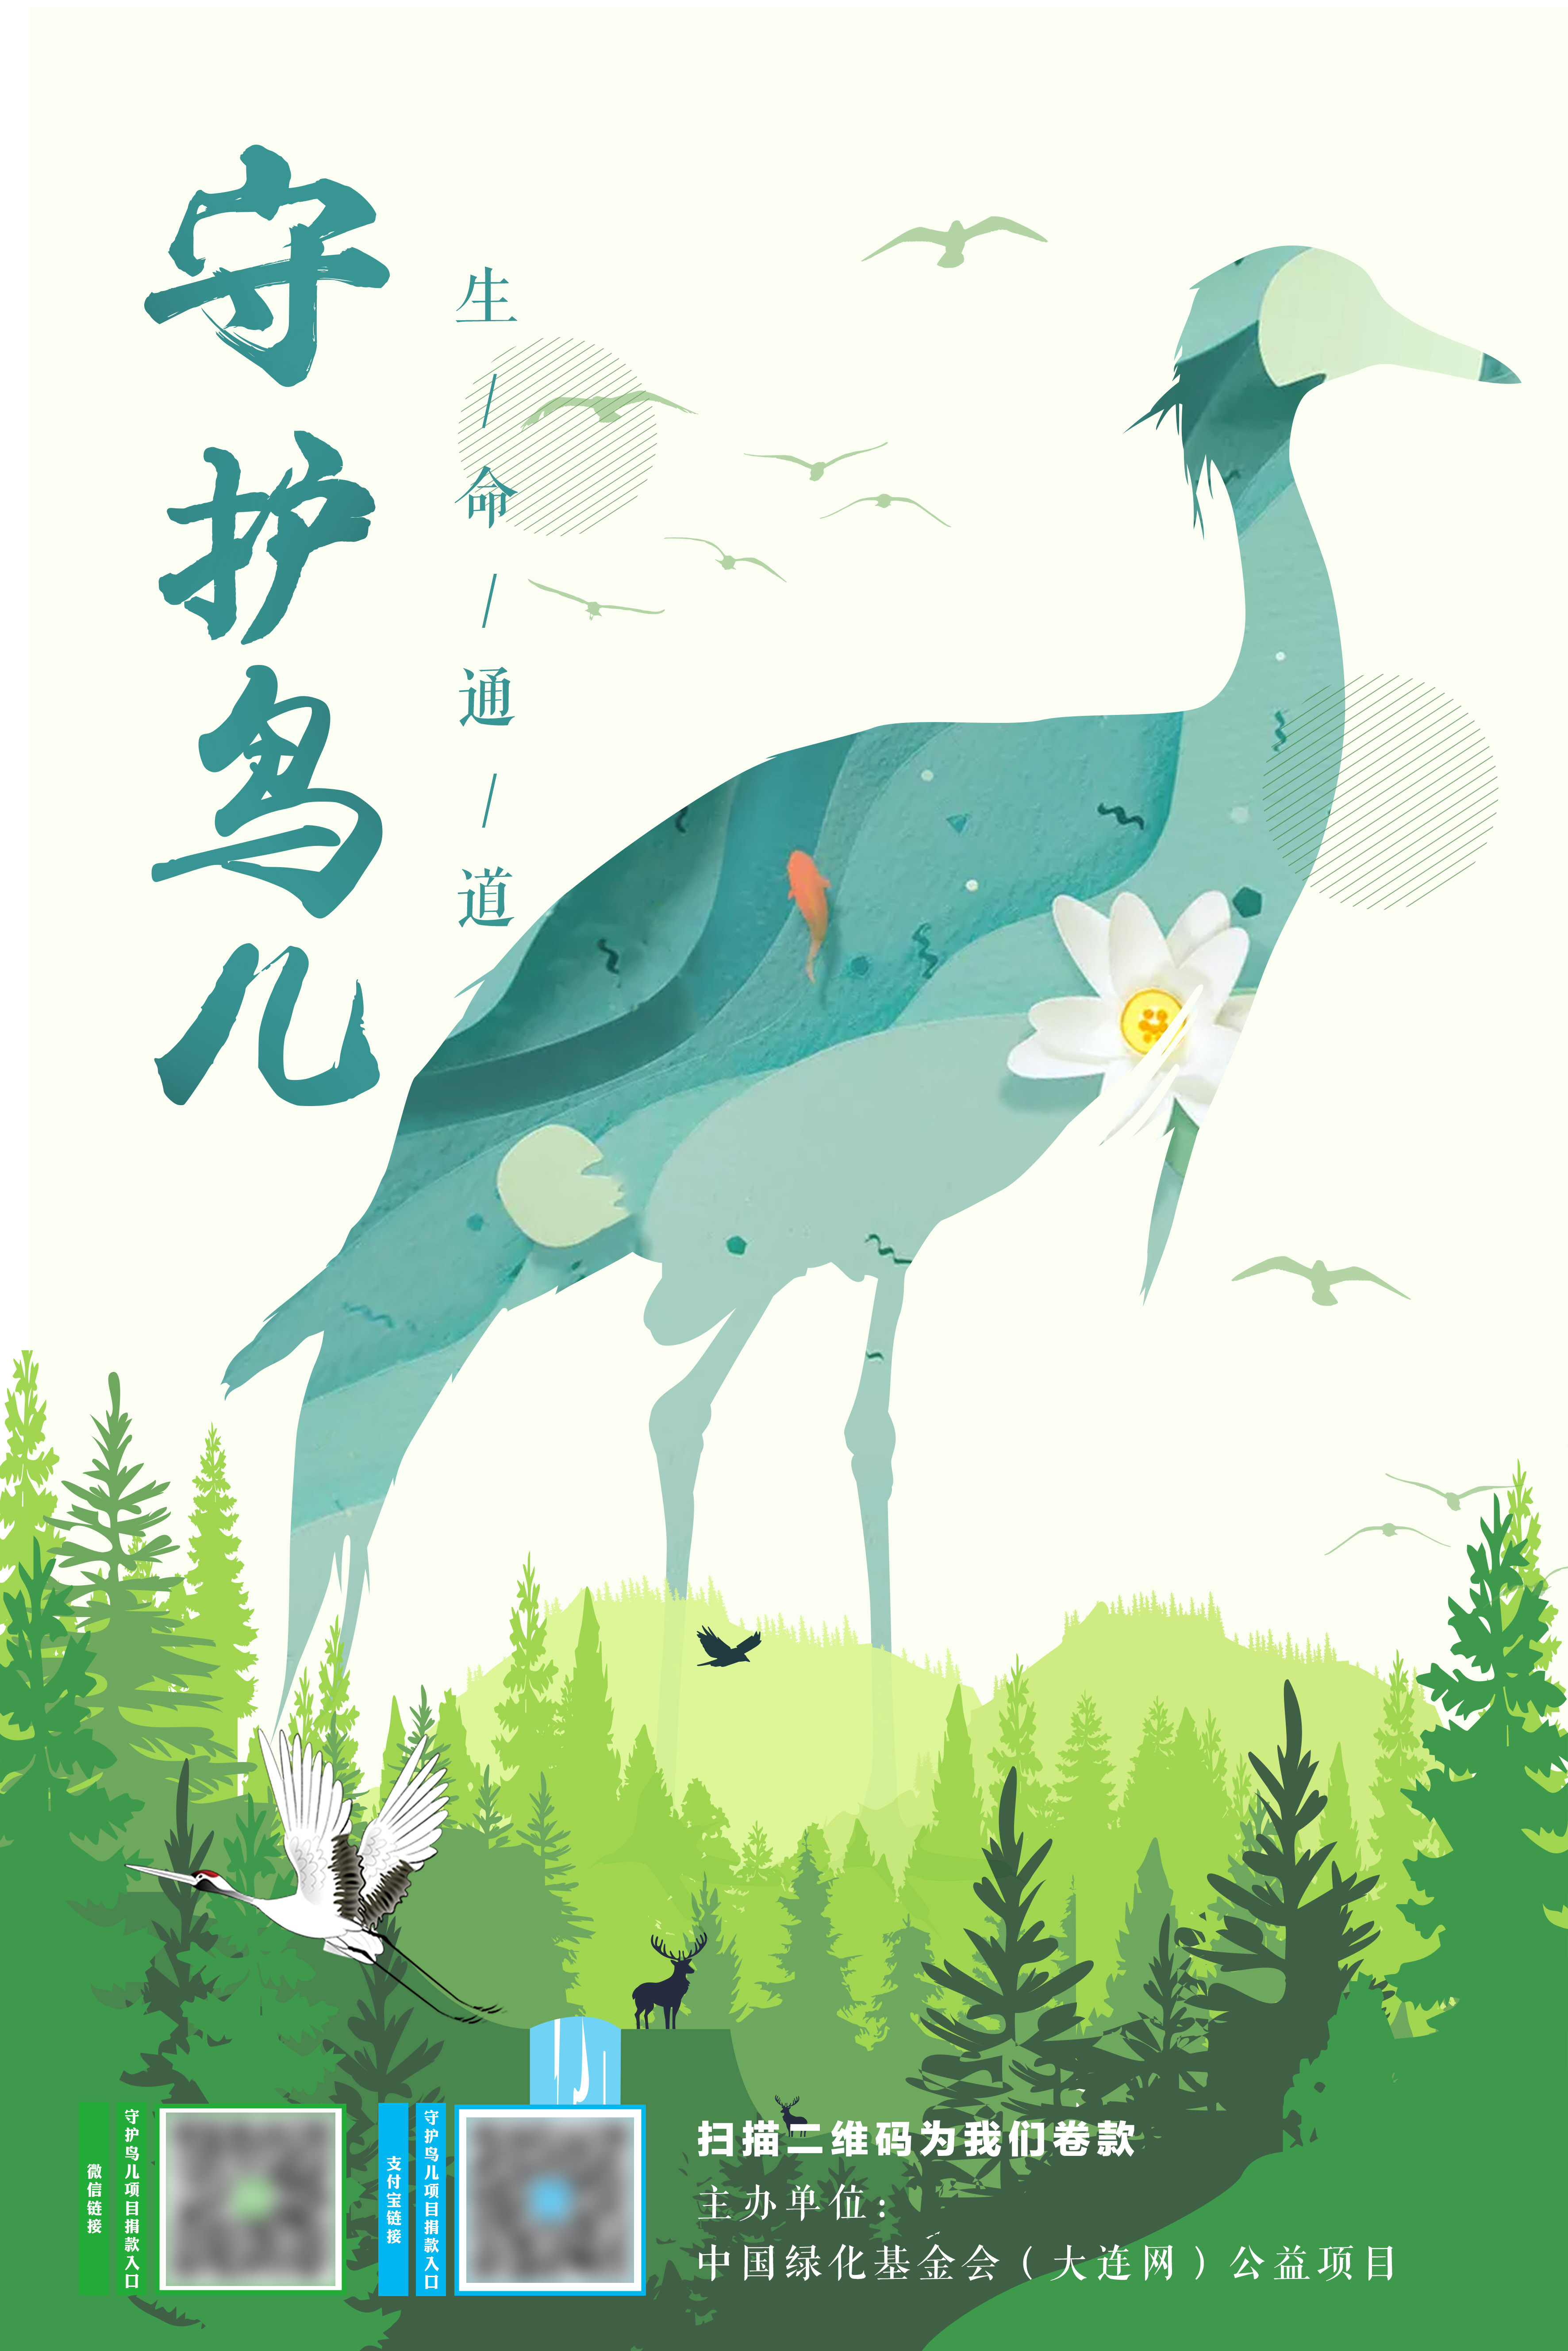 中国绿化基金会,守护鸟儿,保护鸟类,公益海报